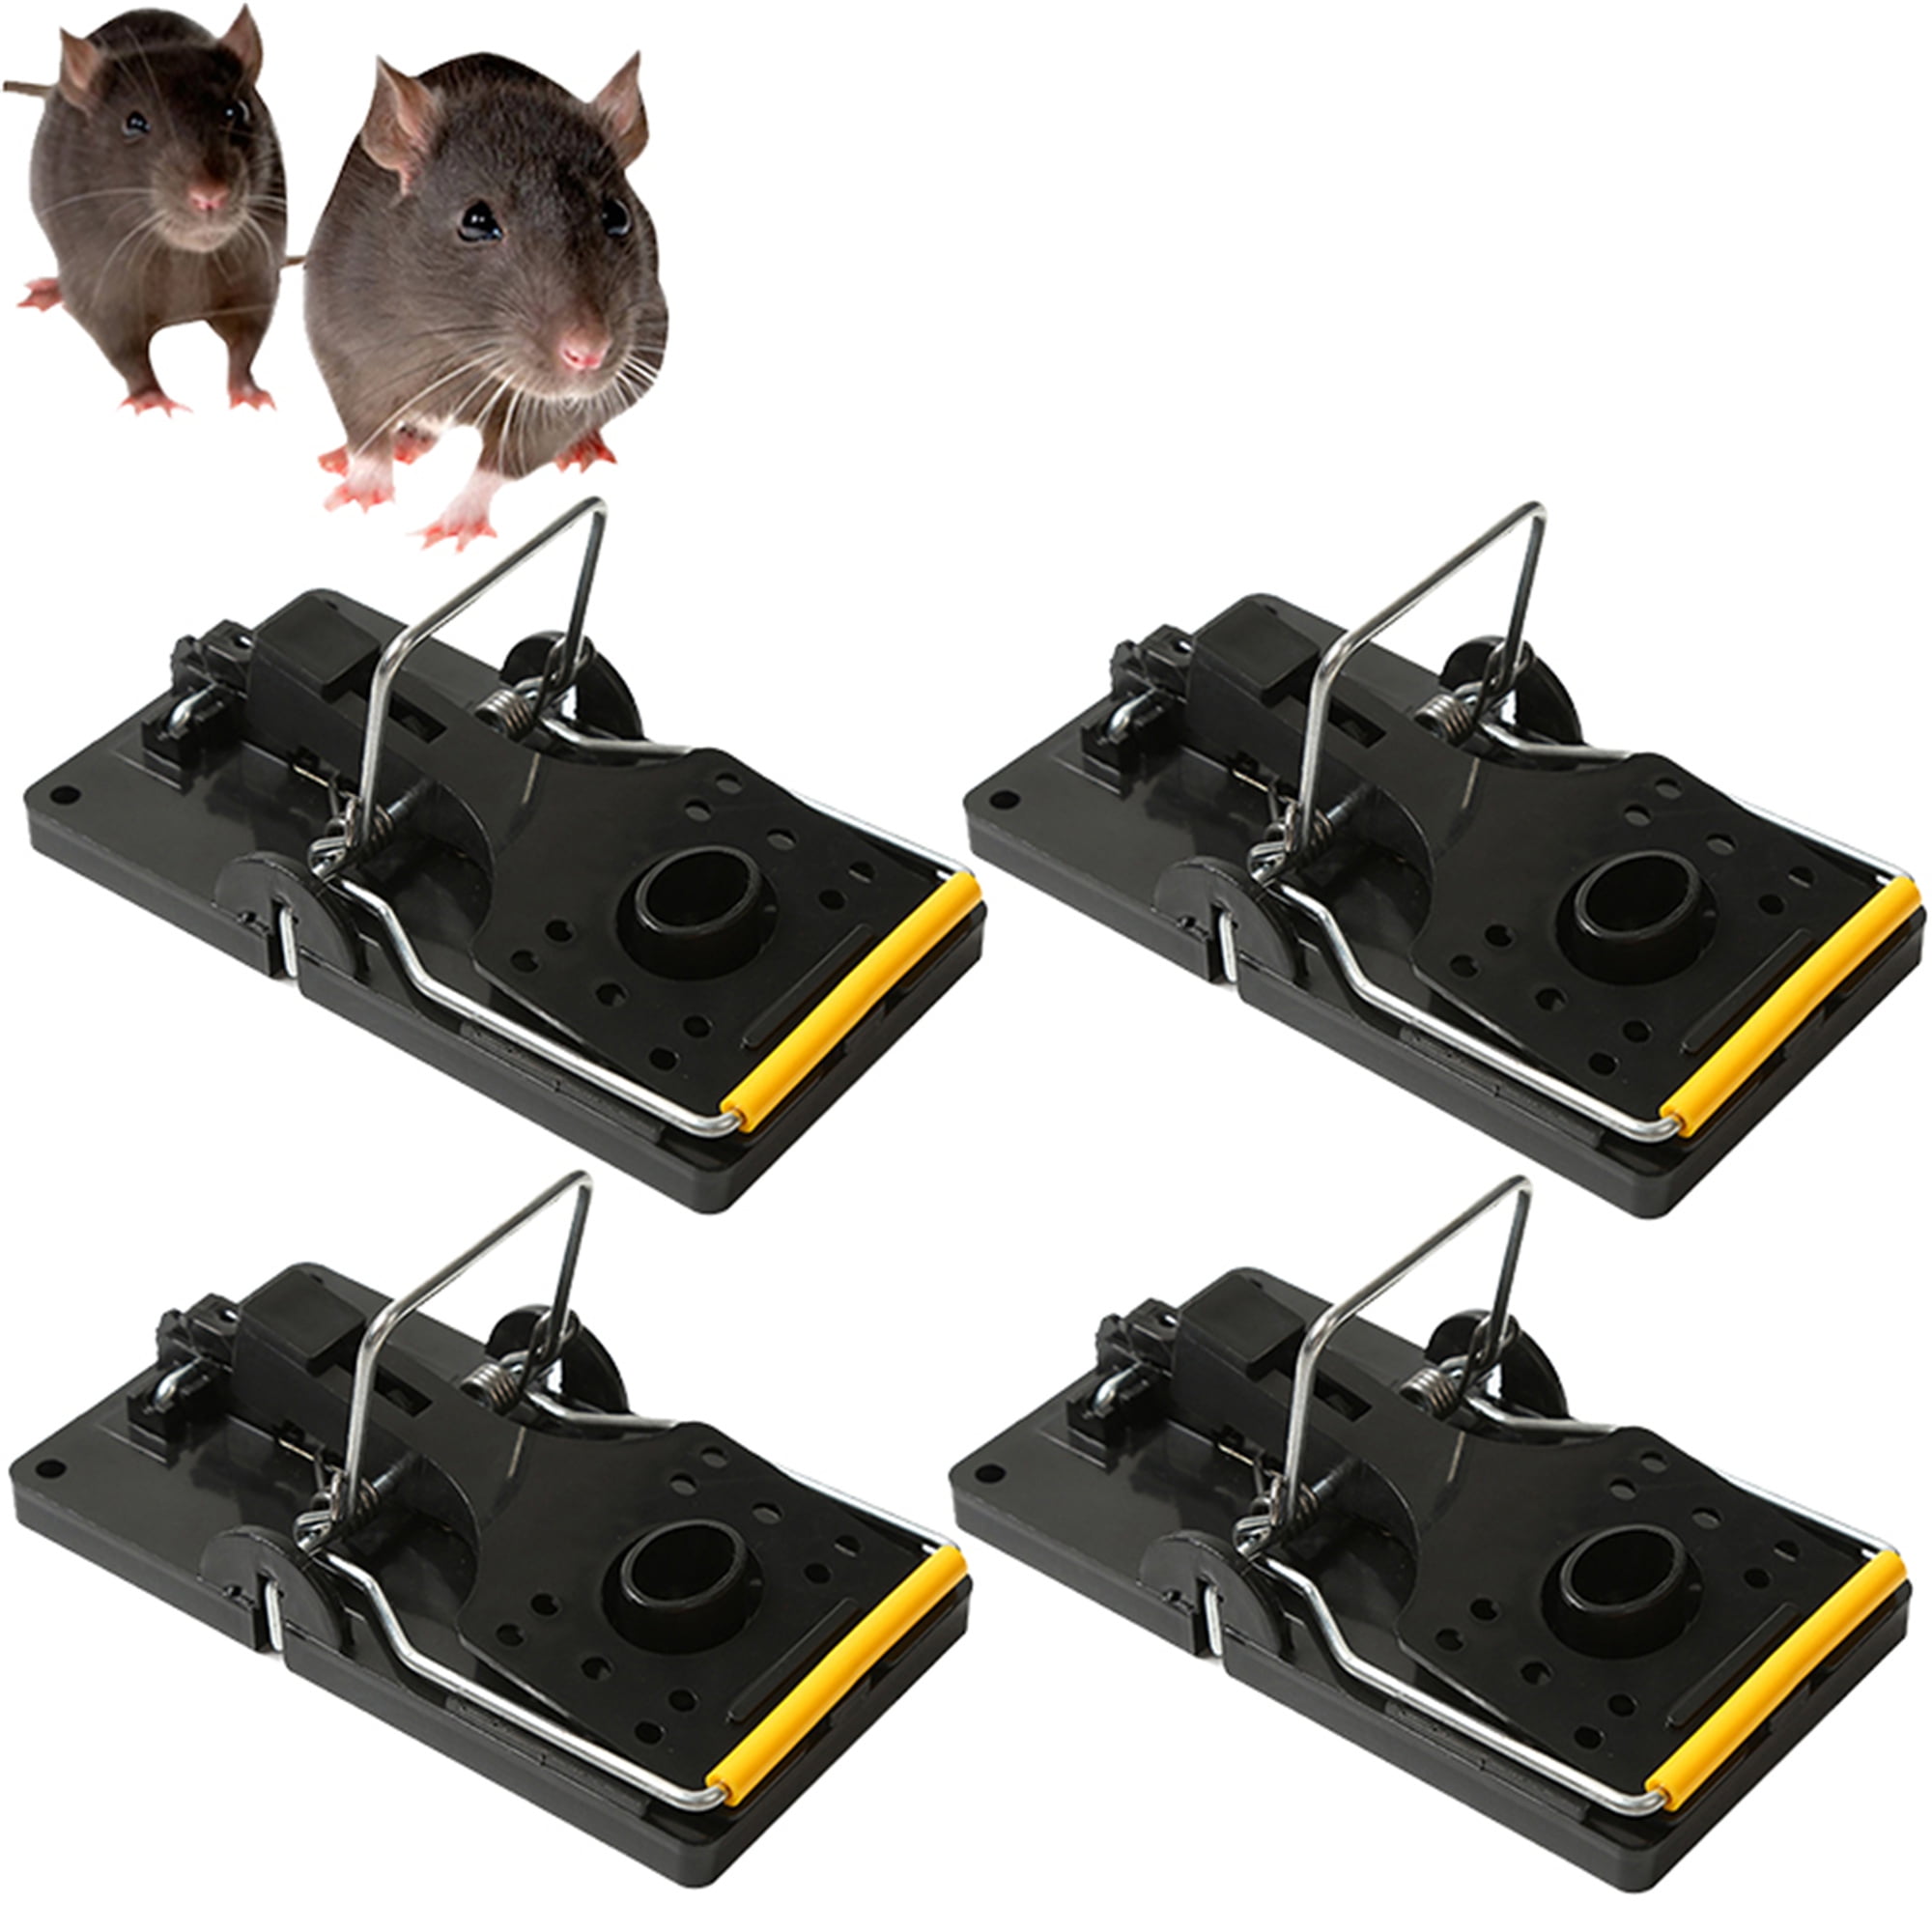 Mouse Traps - Includes 4 Traps